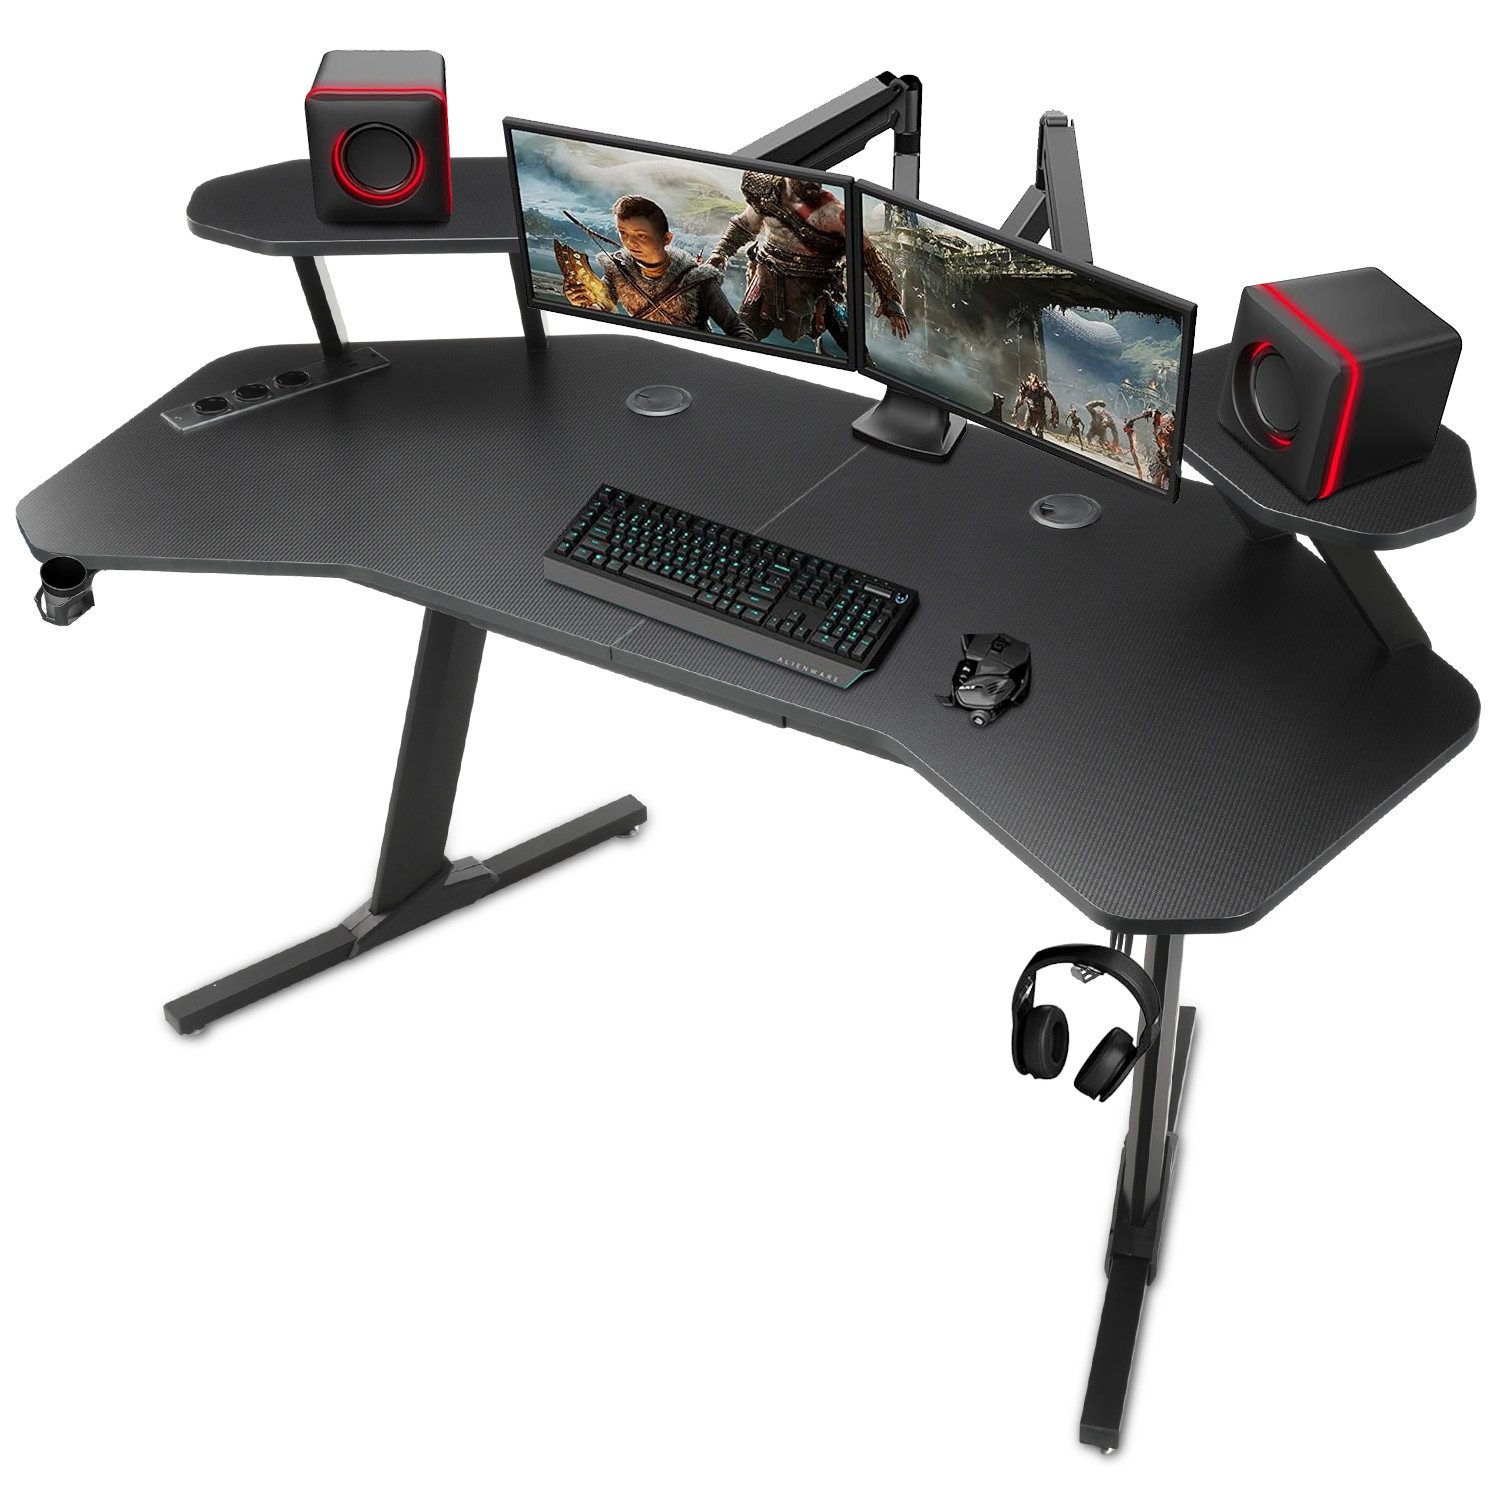 OULENBIYAR Gamingtisch Gaming Schreibtisch Ergonomischer Gamer Desk, 160 x 60x 72 cm, mit 2 Ständern ausgestattet, Kopfhörerhaken und Getränkehalter